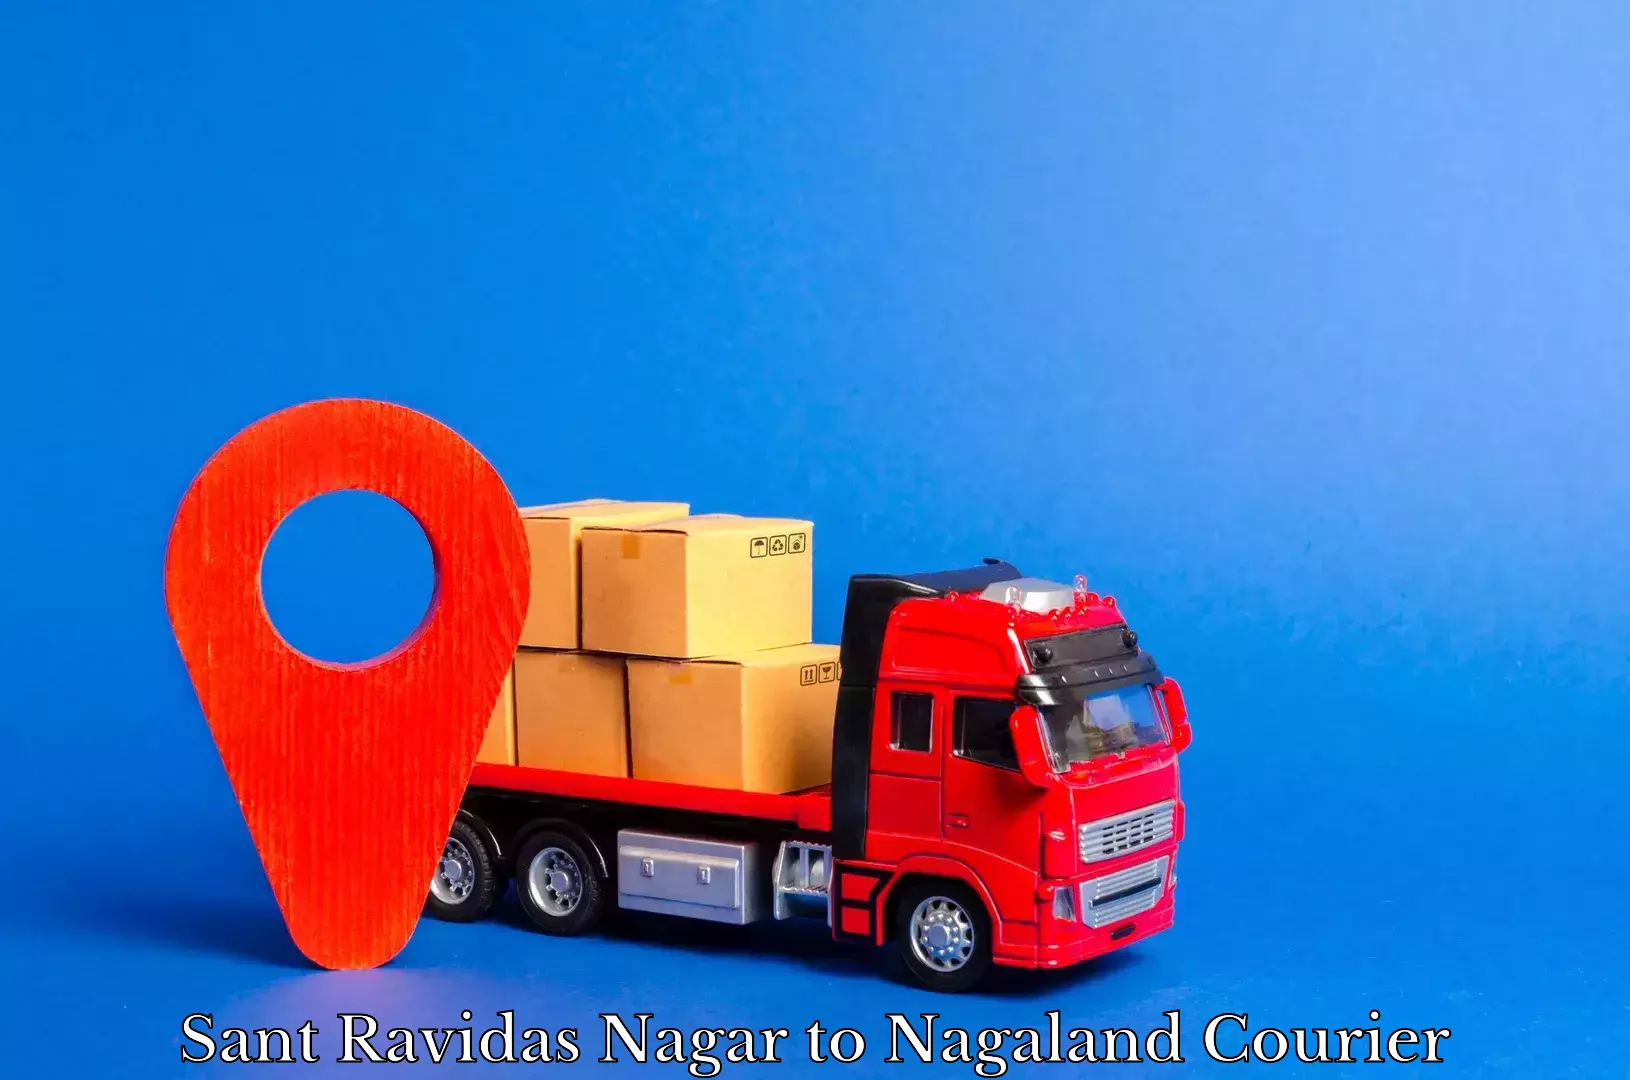 Comprehensive shipping network Sant Ravidas Nagar to Nagaland